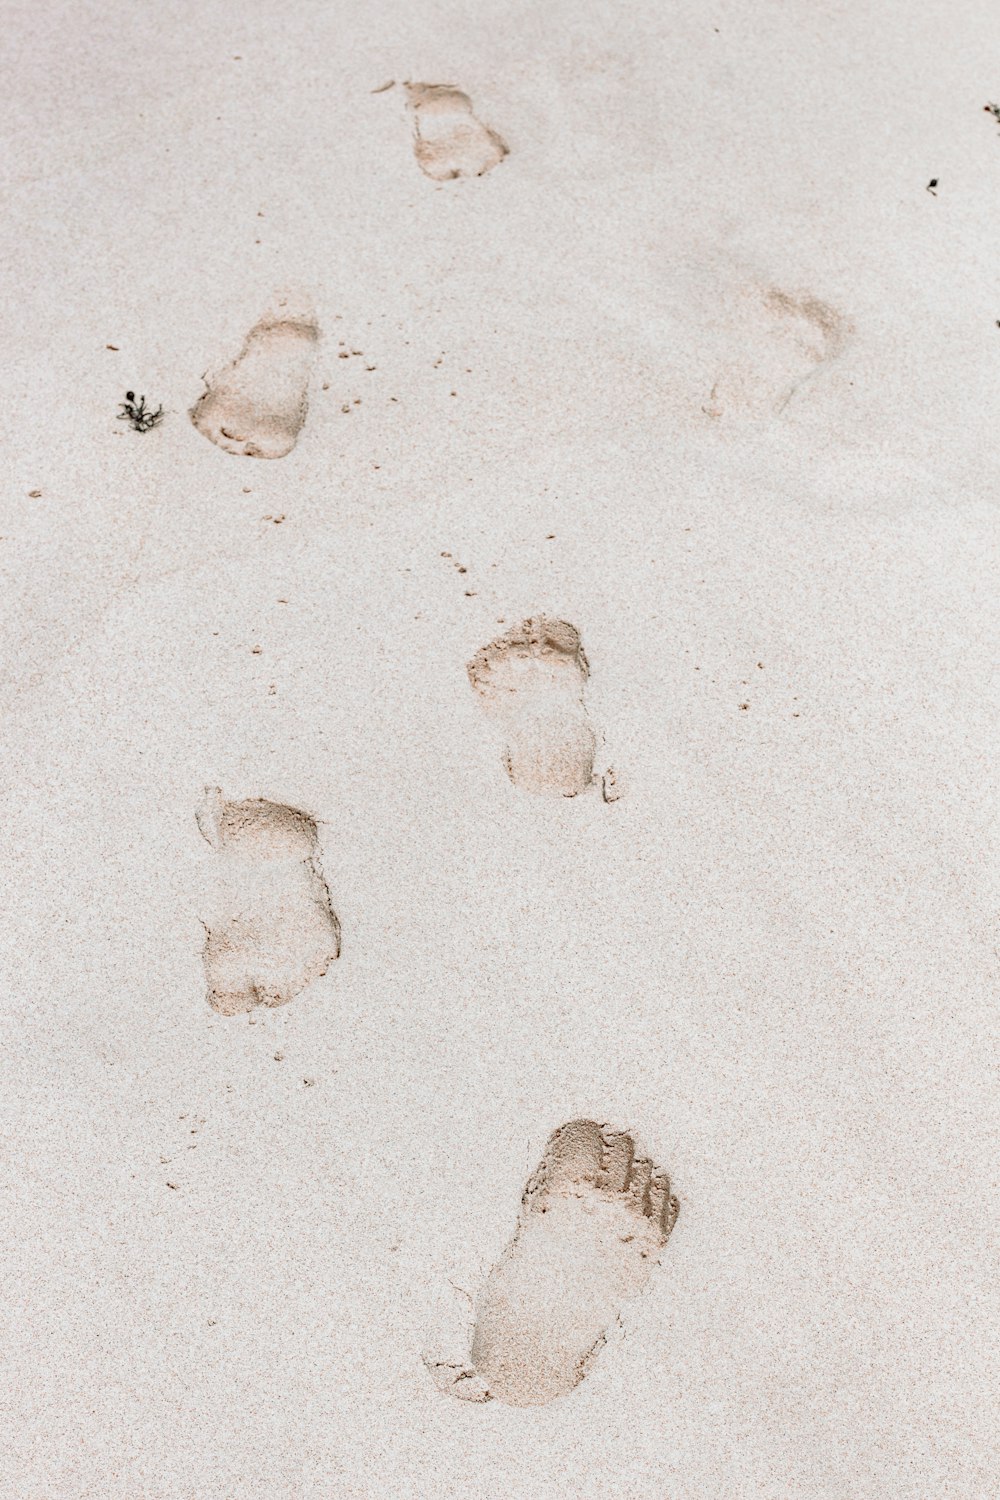 impronte su sabbia bianca